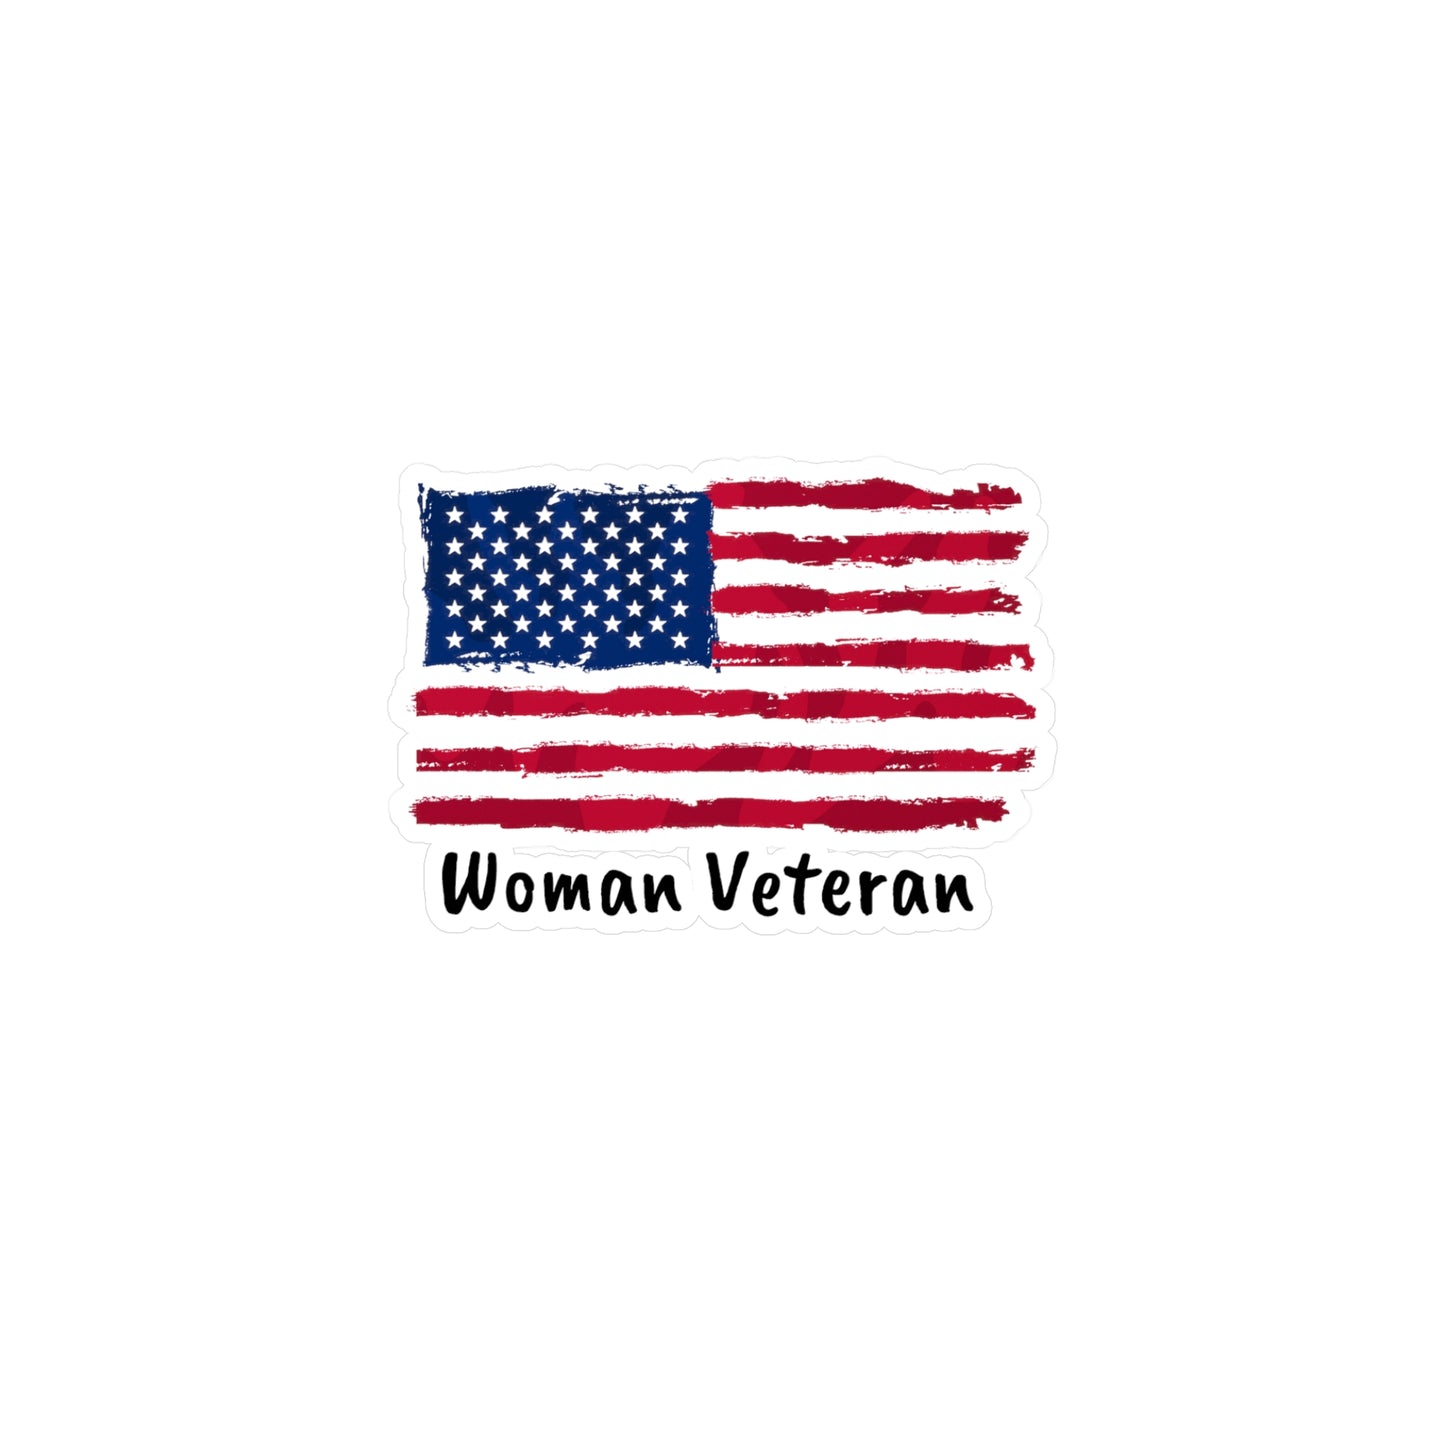 Woman Veteran - Vinyl Decals